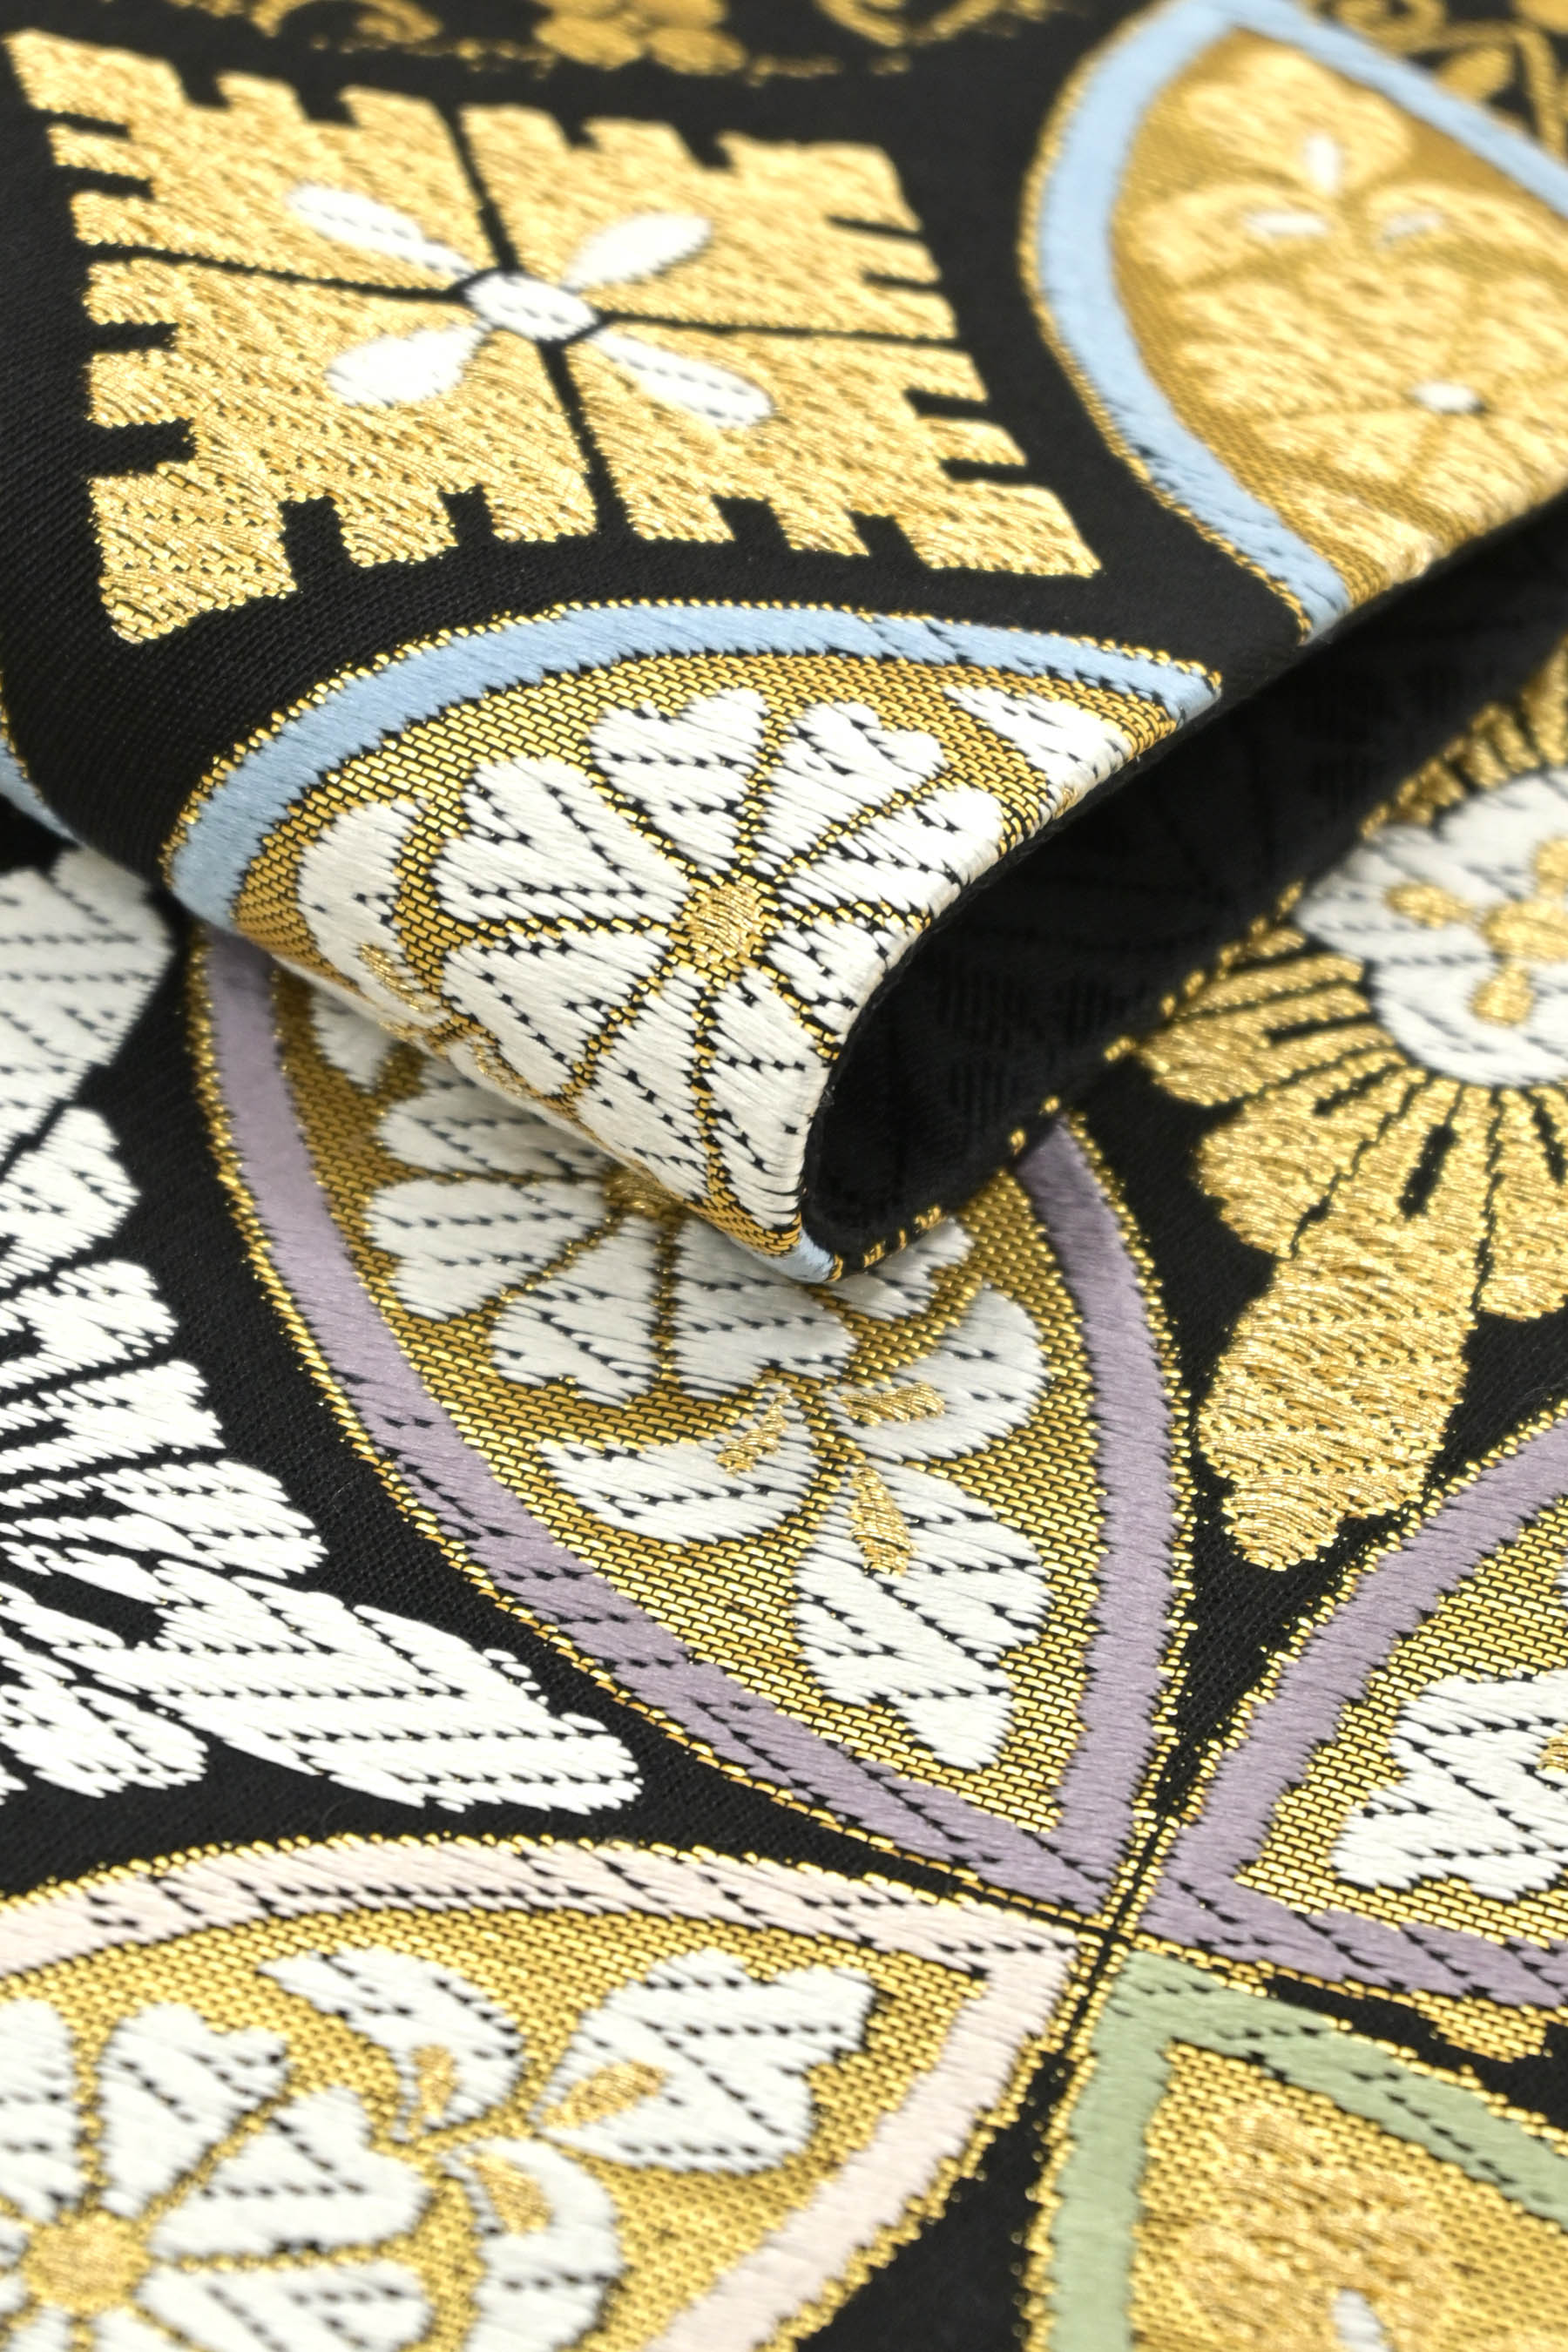 年に一度の大決算SALE】 【都（みやこ）】 特選西陣織袋帯 「七宝菱祥紋」 名門ならではの風格と高級感。 確かな一条。| |京都きもの 市場【日本最大級の着物通販サイト】